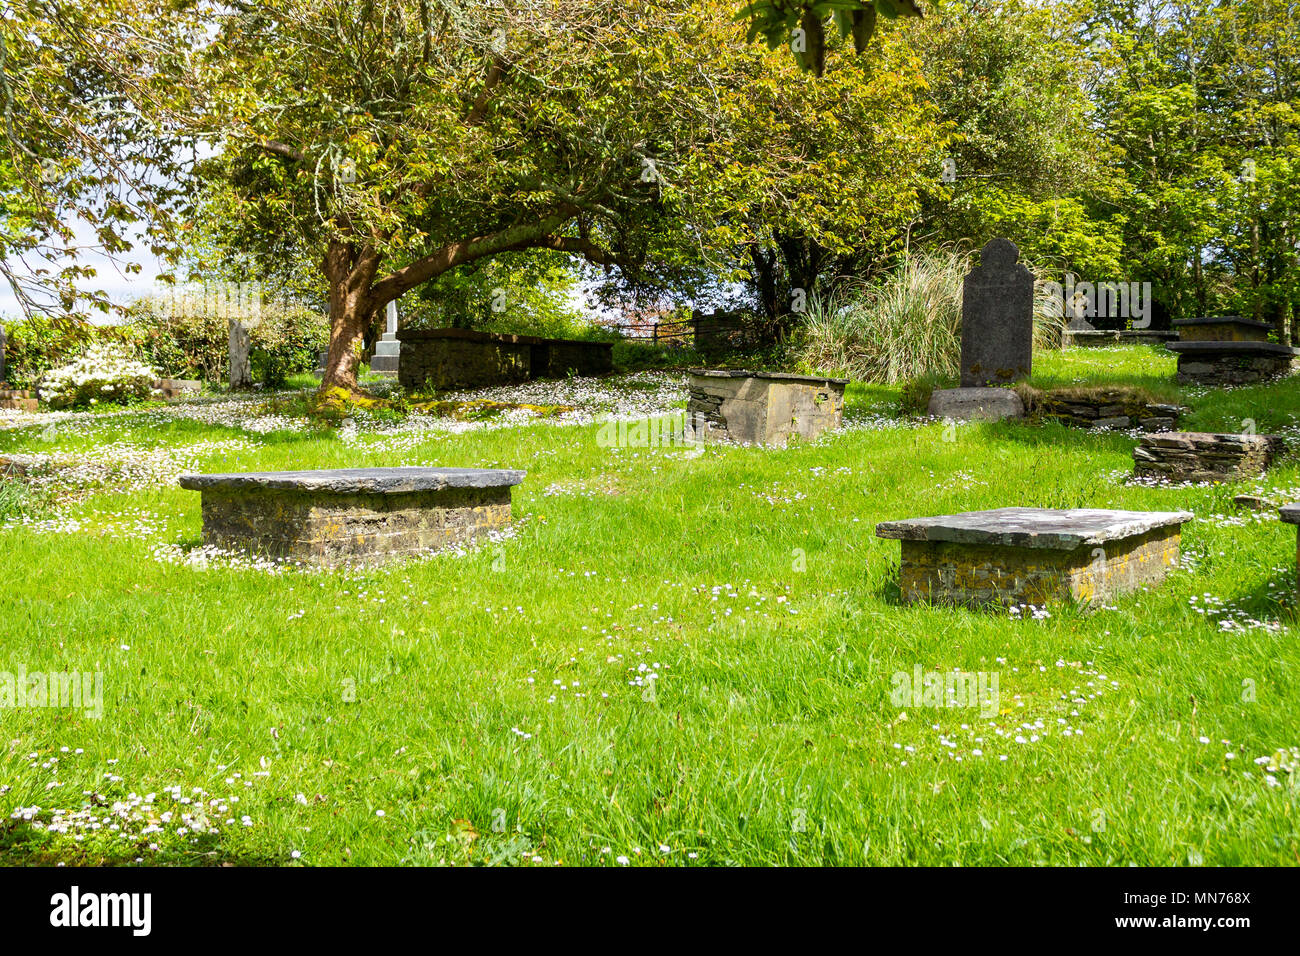 Un tranquilo pueblecito tranquilo cementerio, grave yard o cementerio, en una mañana de primavera. Foto de stock